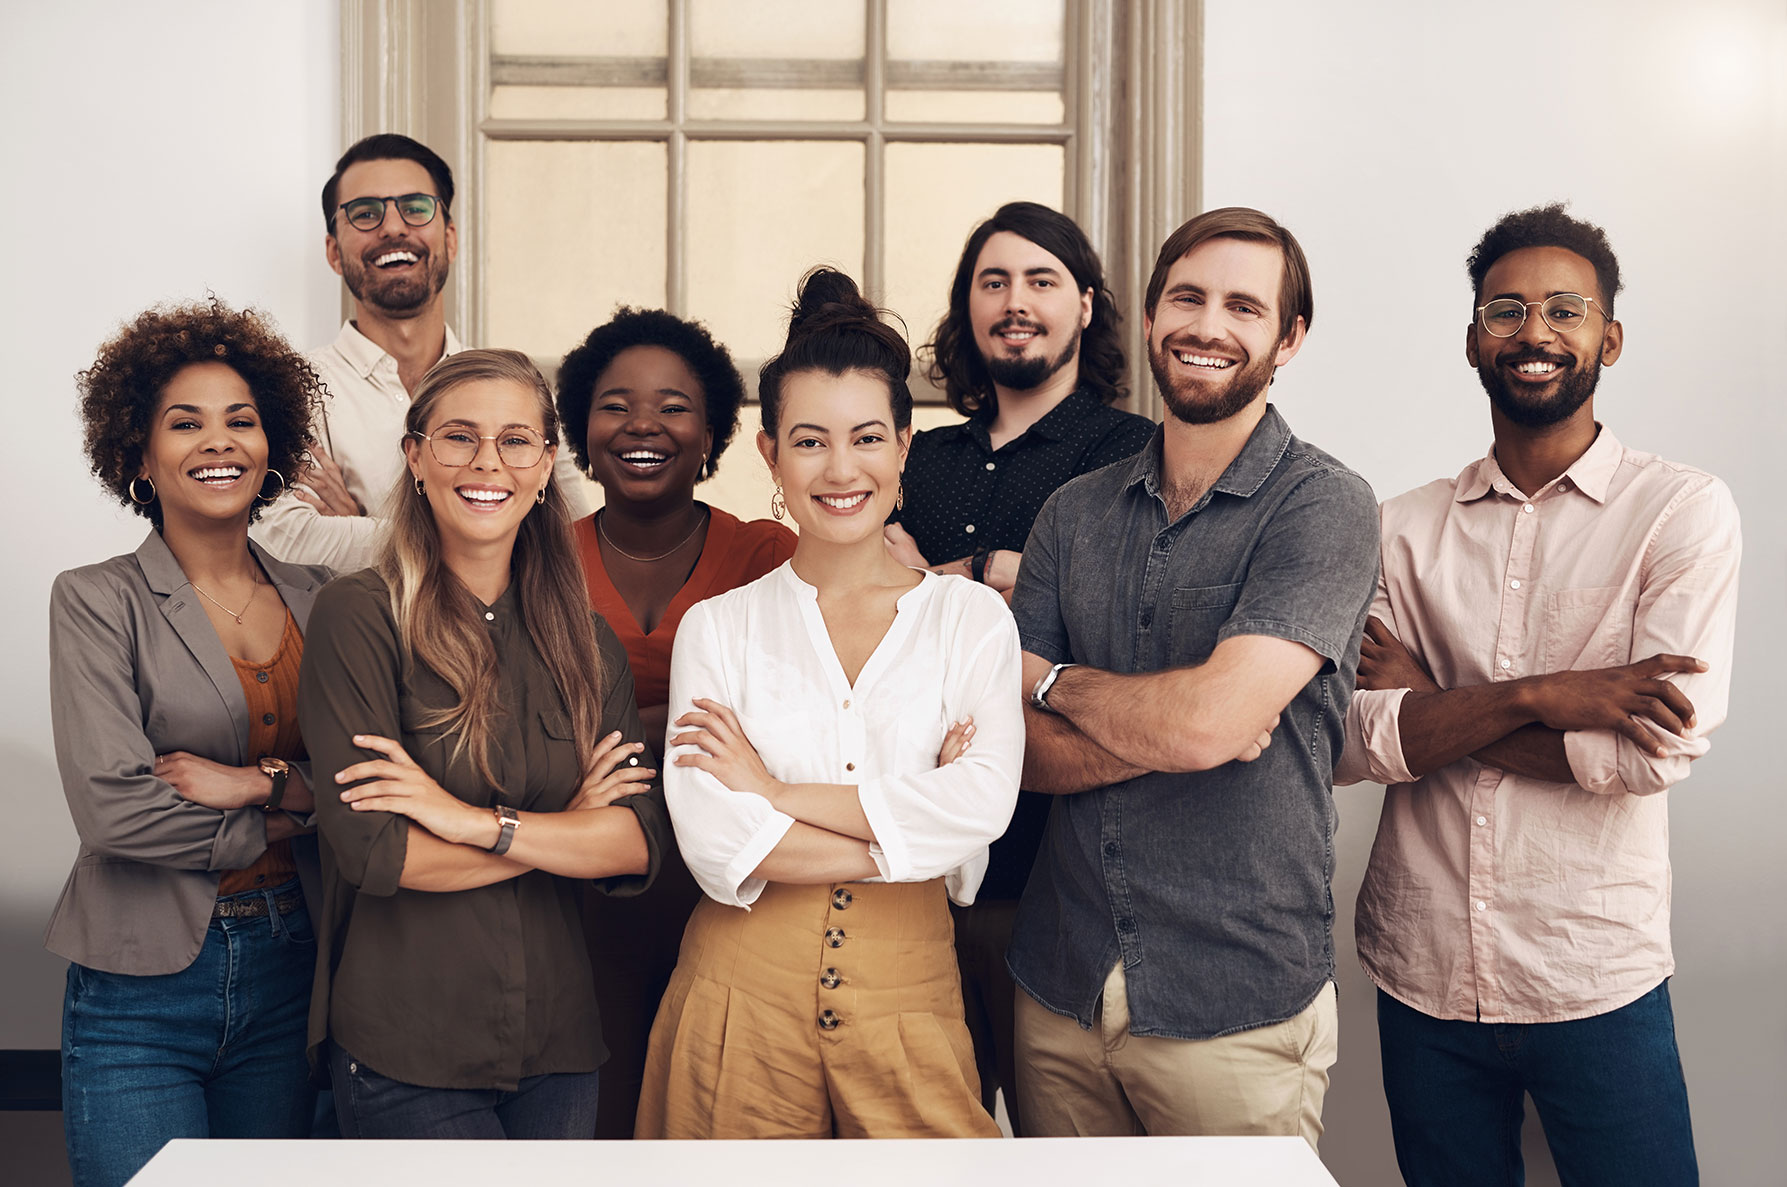 Smiling startup entrepreneurs standing together.